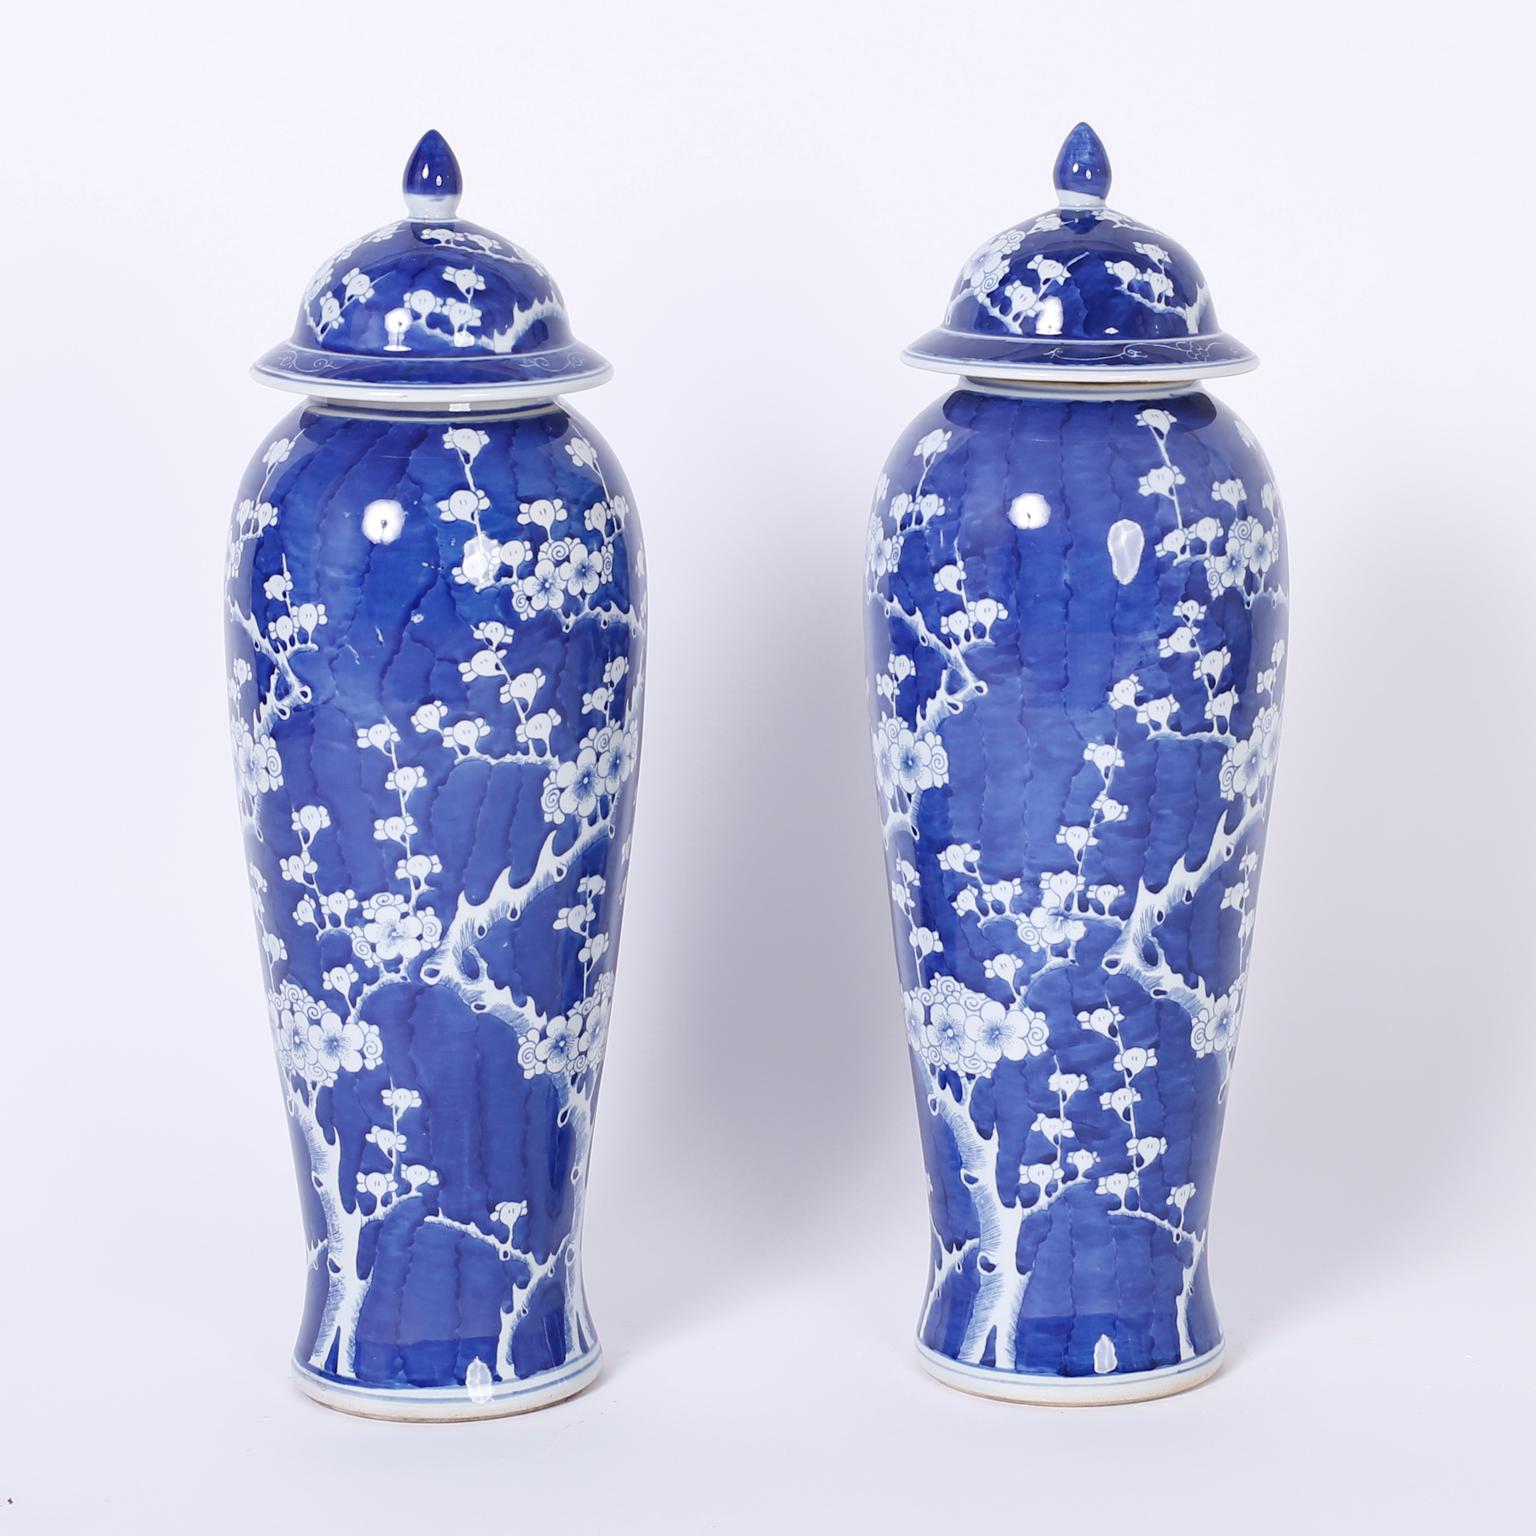 Erhabenes Paar blau-weißer Deckelgefäße mit einer unverwechselbaren:: hohen:: eleganten Form:: verziert mit Kirschblüten- oder Prunius-Motiven in chinesischer Exportmanier auf einem verführerischen tiefblauen Hintergrund.